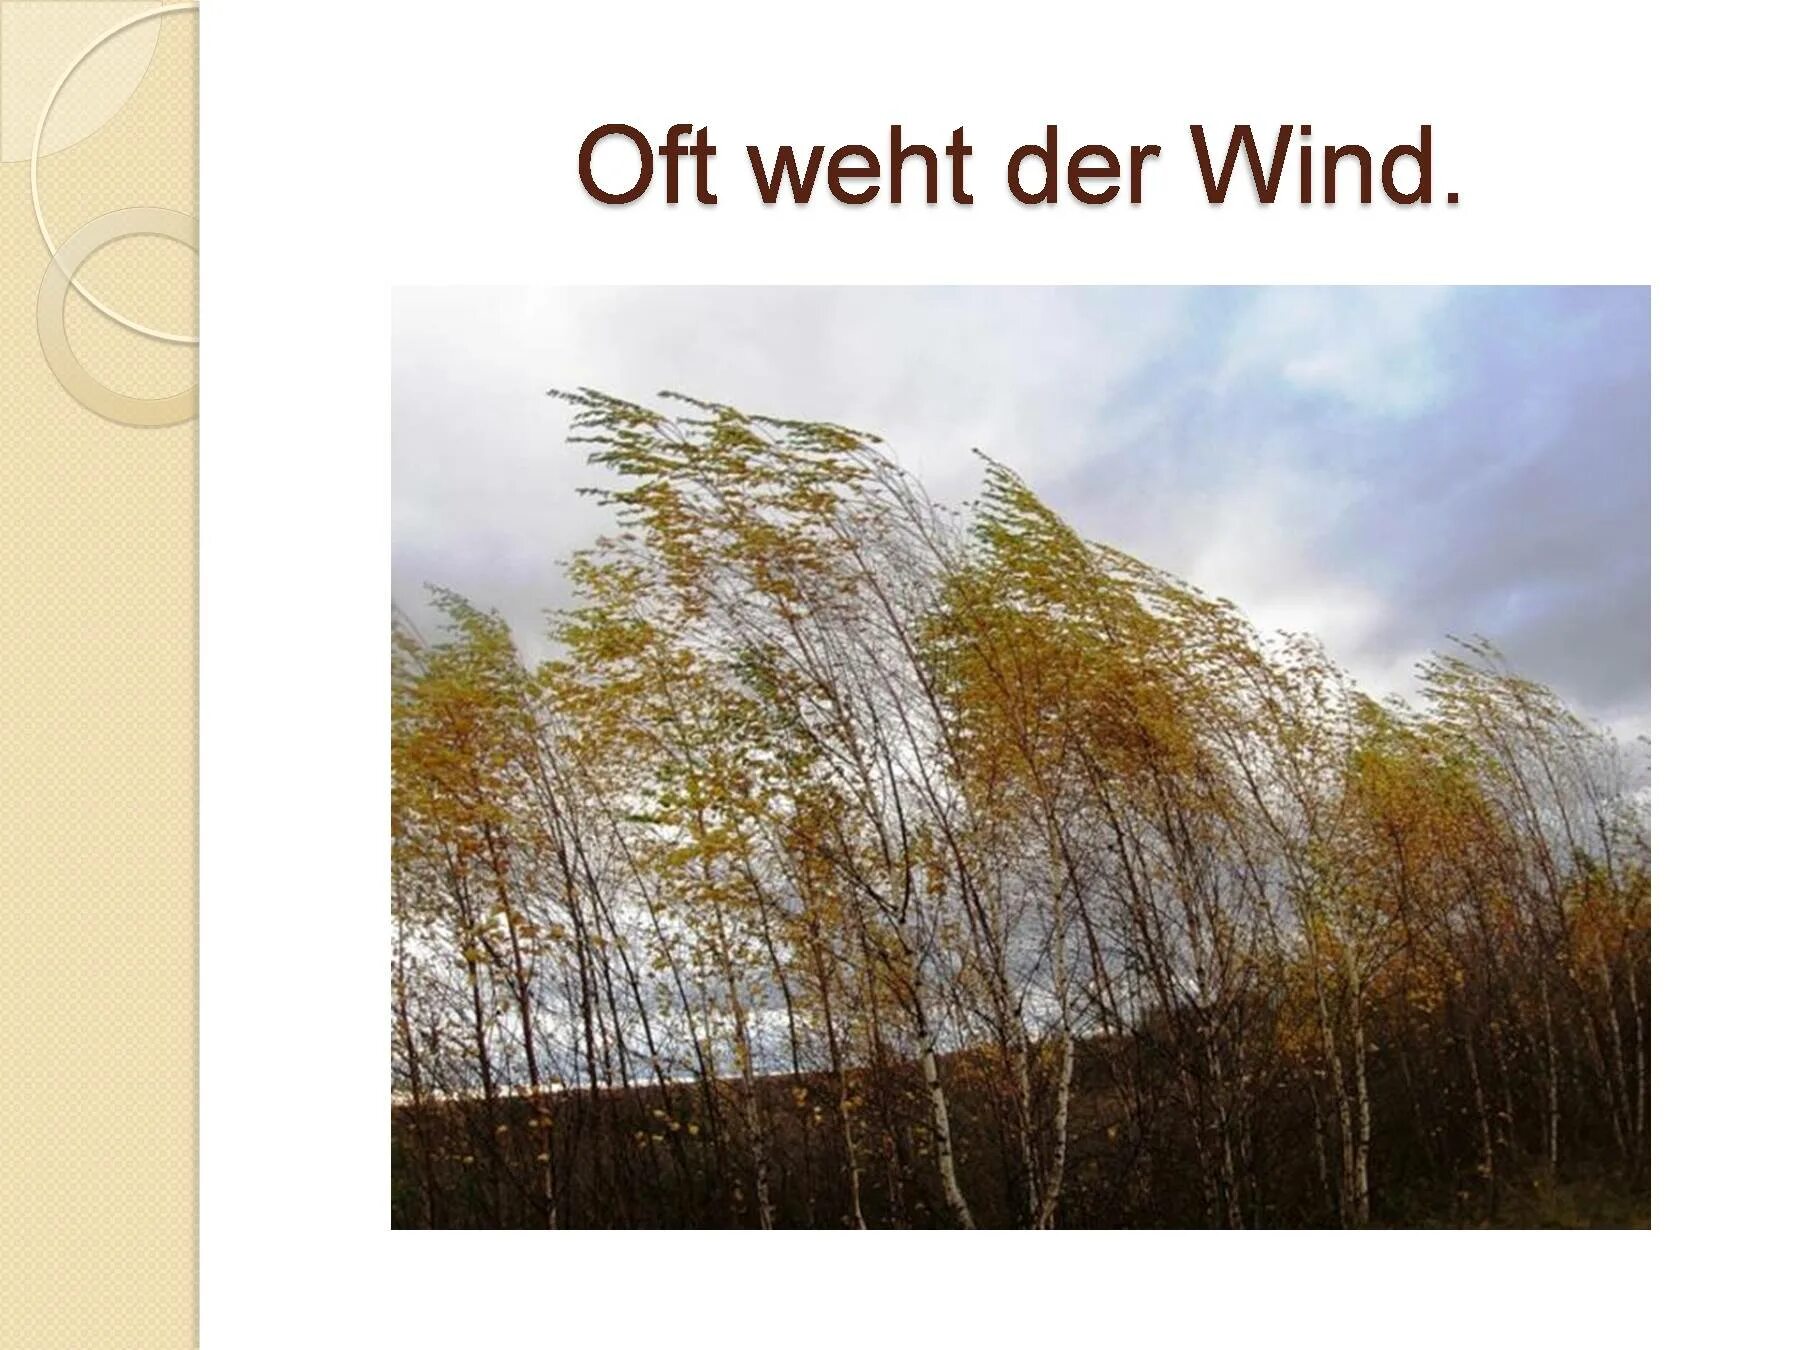 Где дуют сильные ветры. Сильный ветер осень. Сильный ветер осенью. Осень дует сильный ветер. Ветер верхушки деревьев.